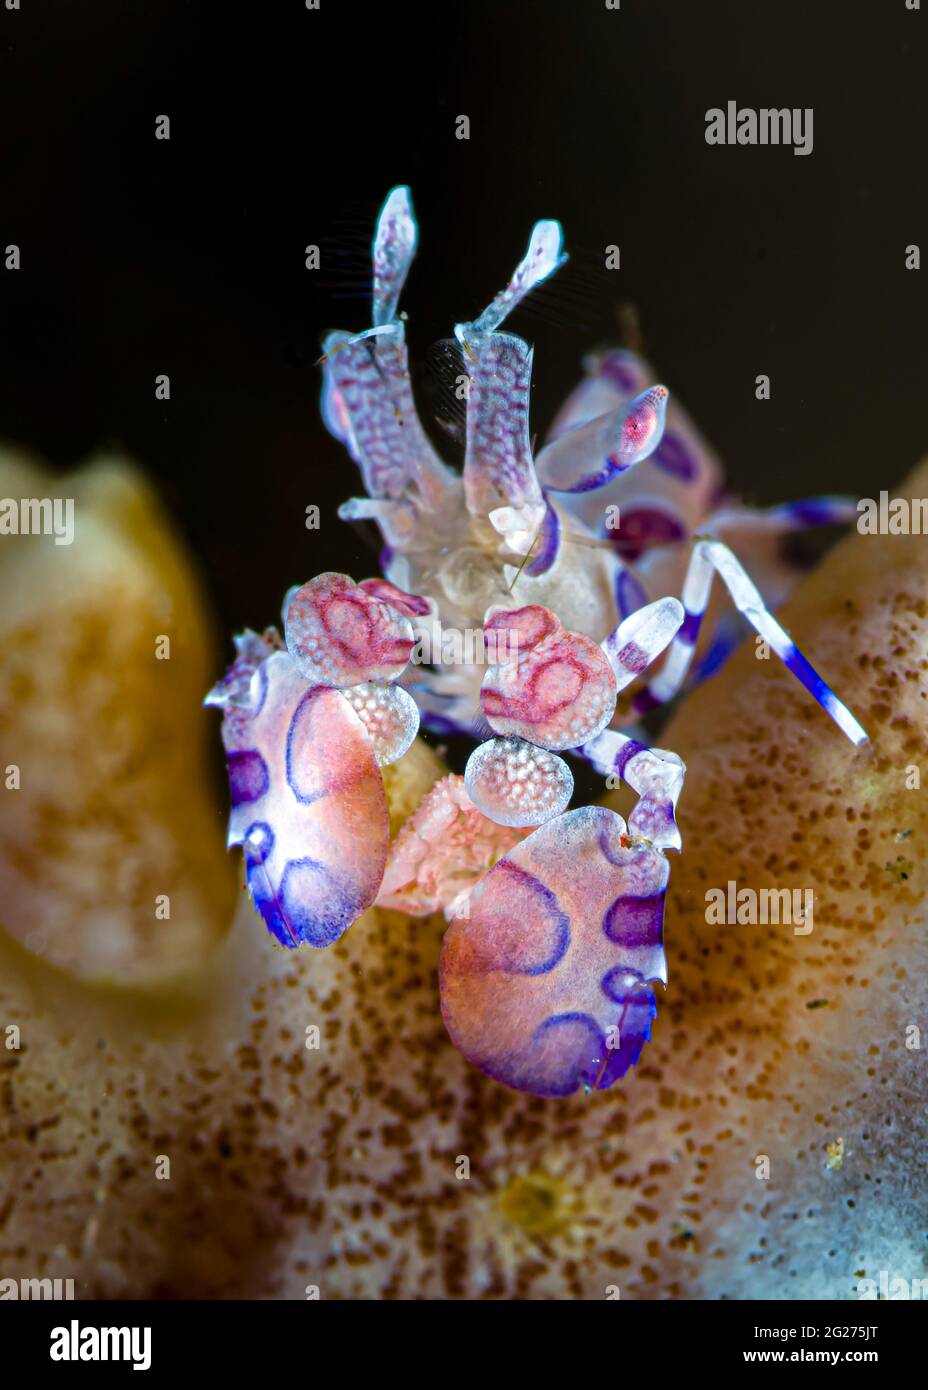 Vue de face d'une crevette d'arlequin (Hymenocera elegans), Tulamben, Bali, Indonésie. Banque D'Images